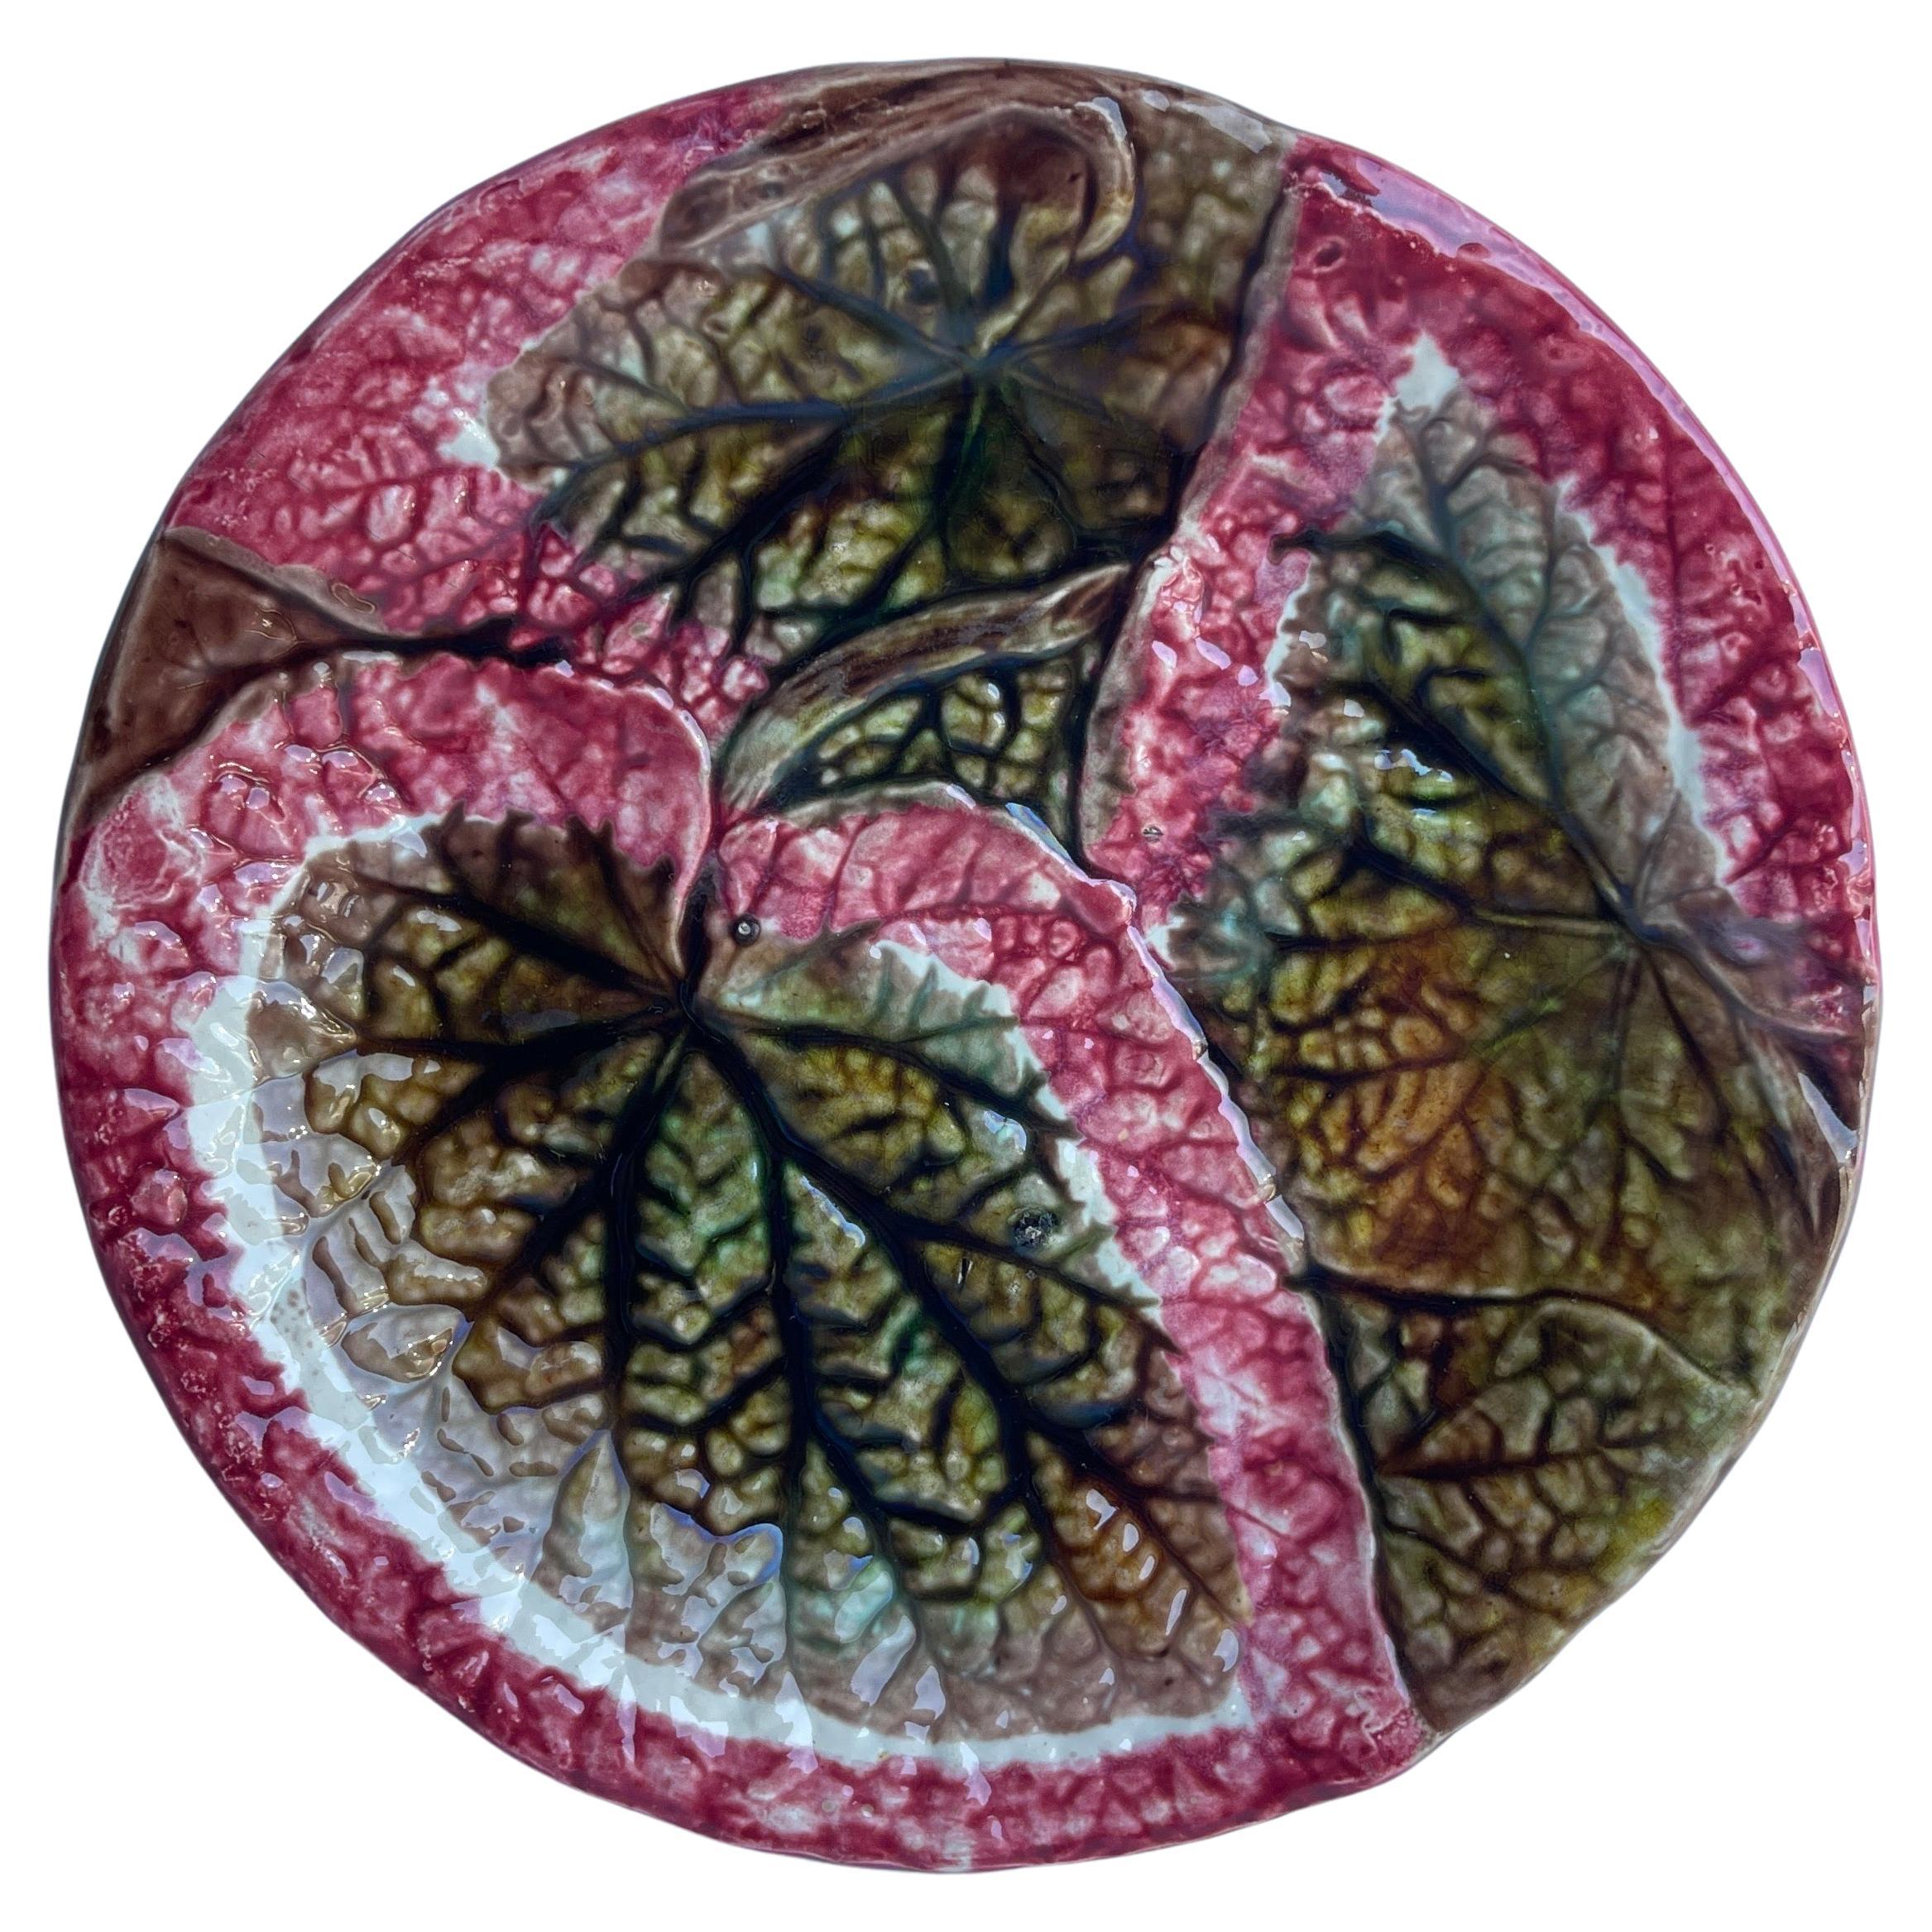 Rot-grüner Begonia-Blattteller aus Majolika des 19. Jahrhunderts, England